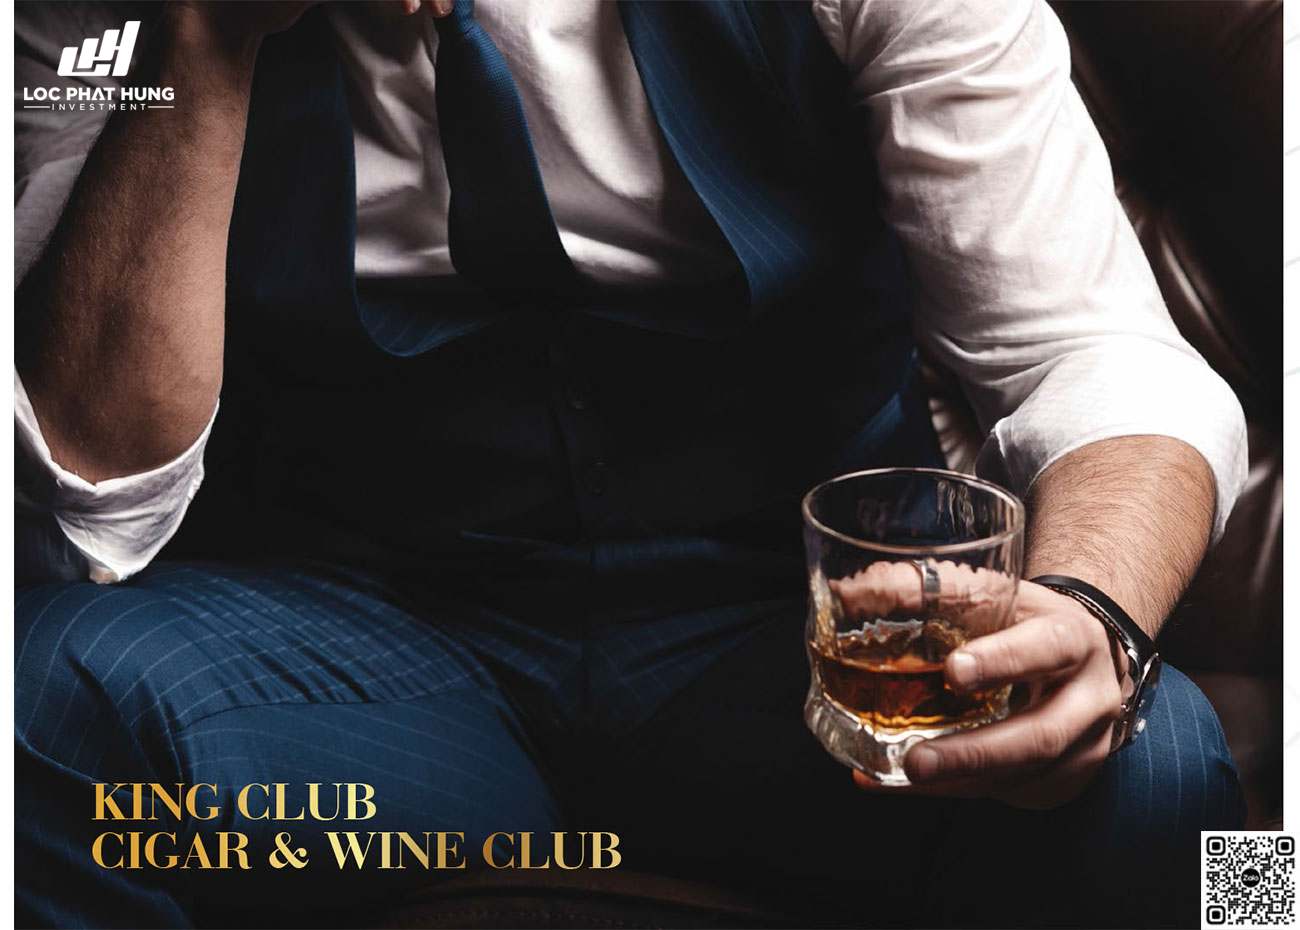 Tiện ích King Club, Cirga - Wine Club dự án Sunshine Sky City.